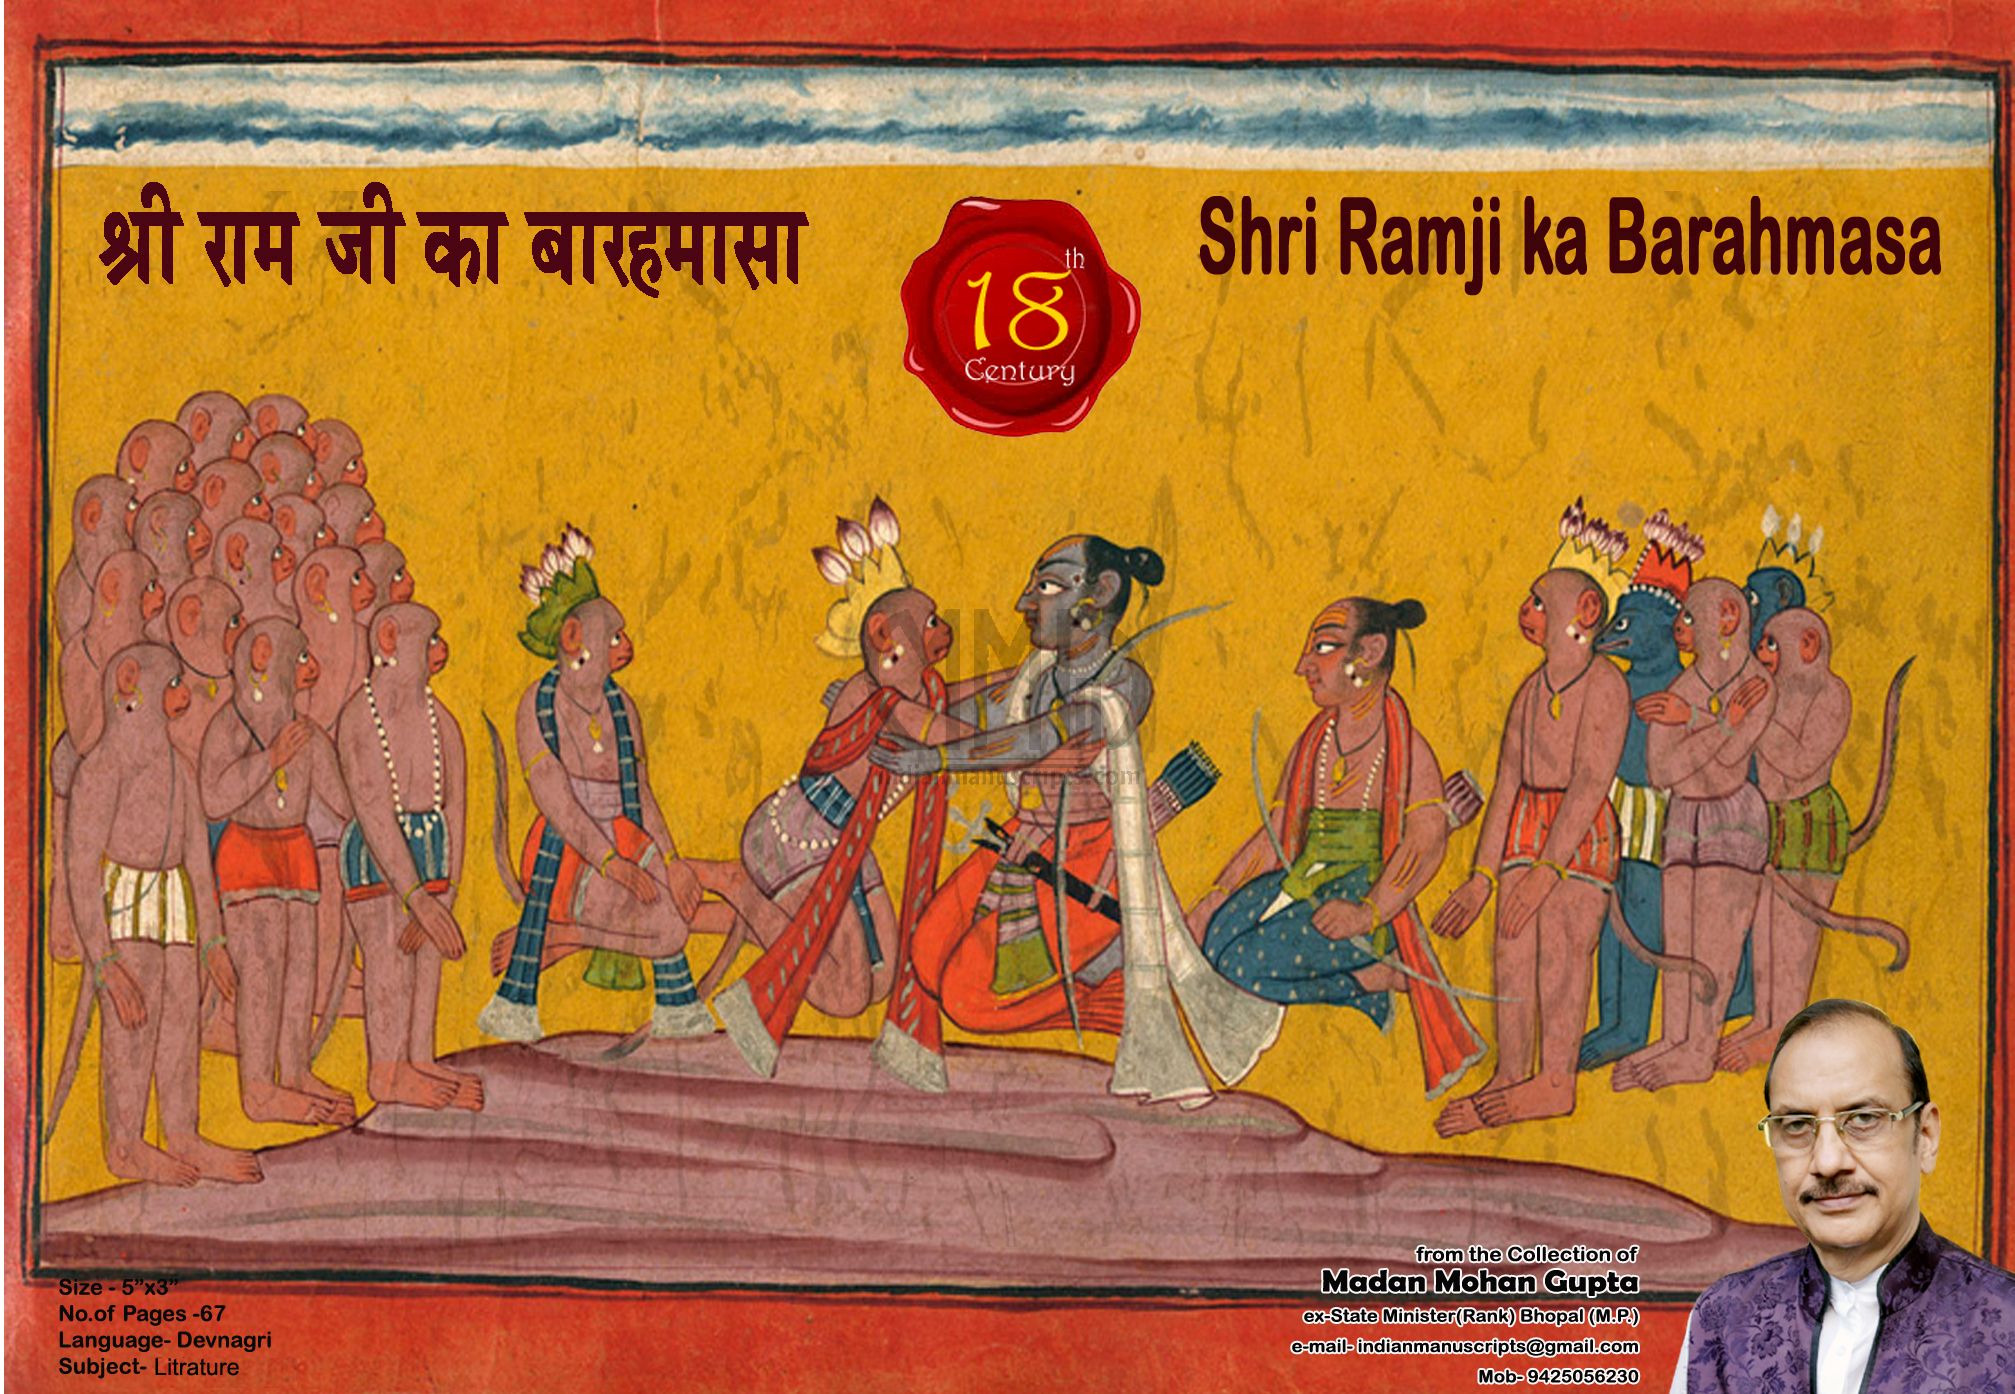 Shri Ram ji Ka Barahamasa